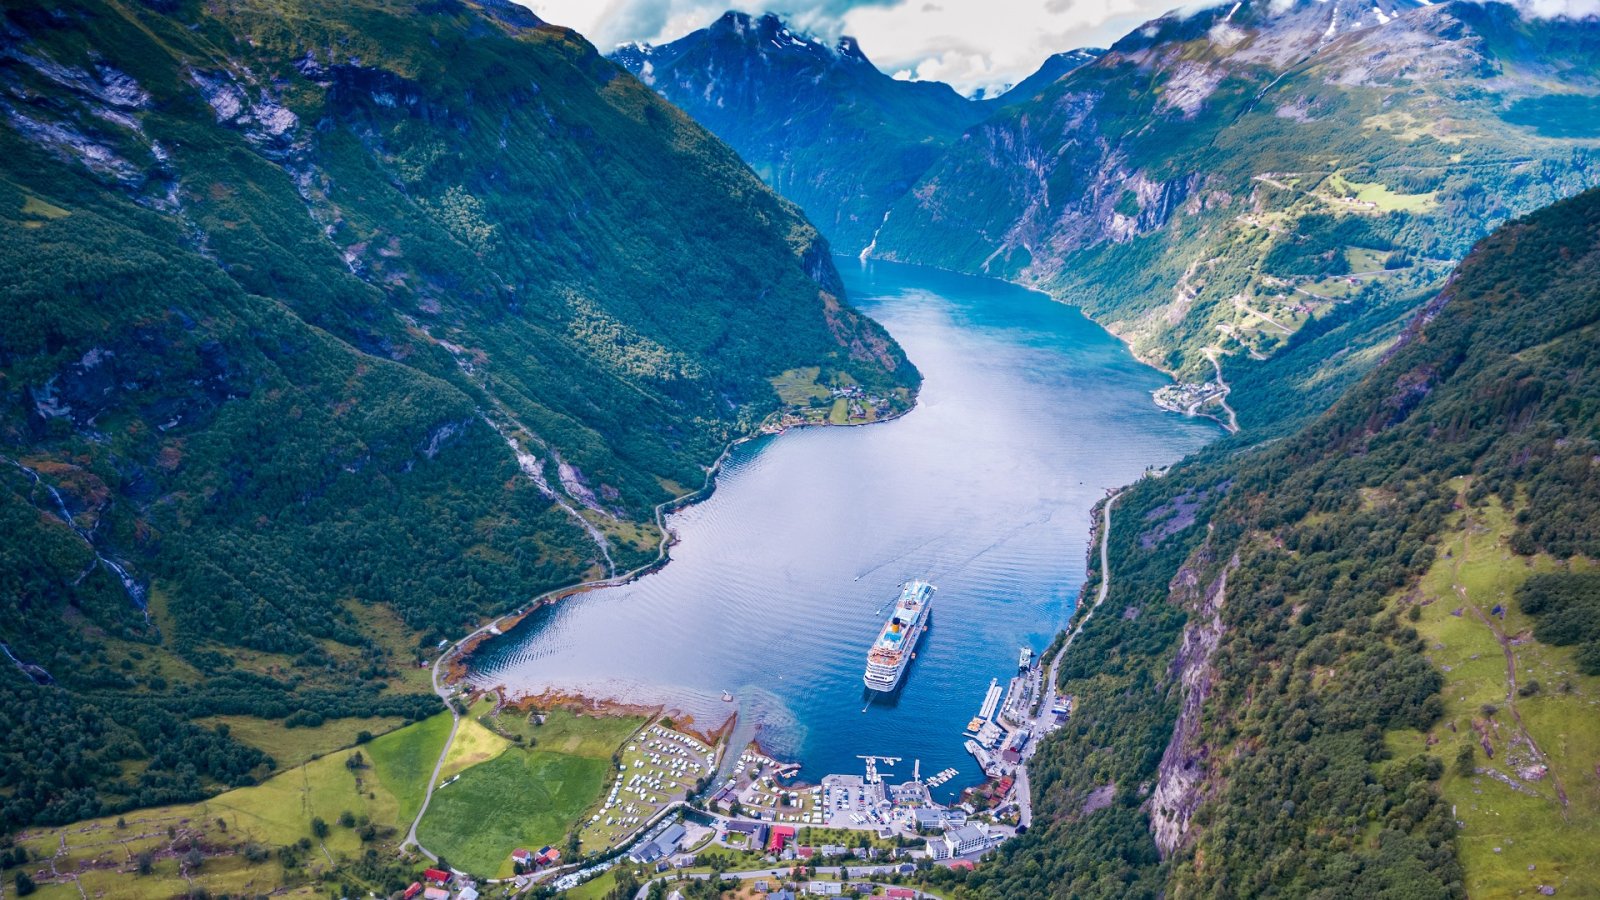 Descubra as paisagens majestosas do Fiorde Noruega, sua pitoresca porta de entrada